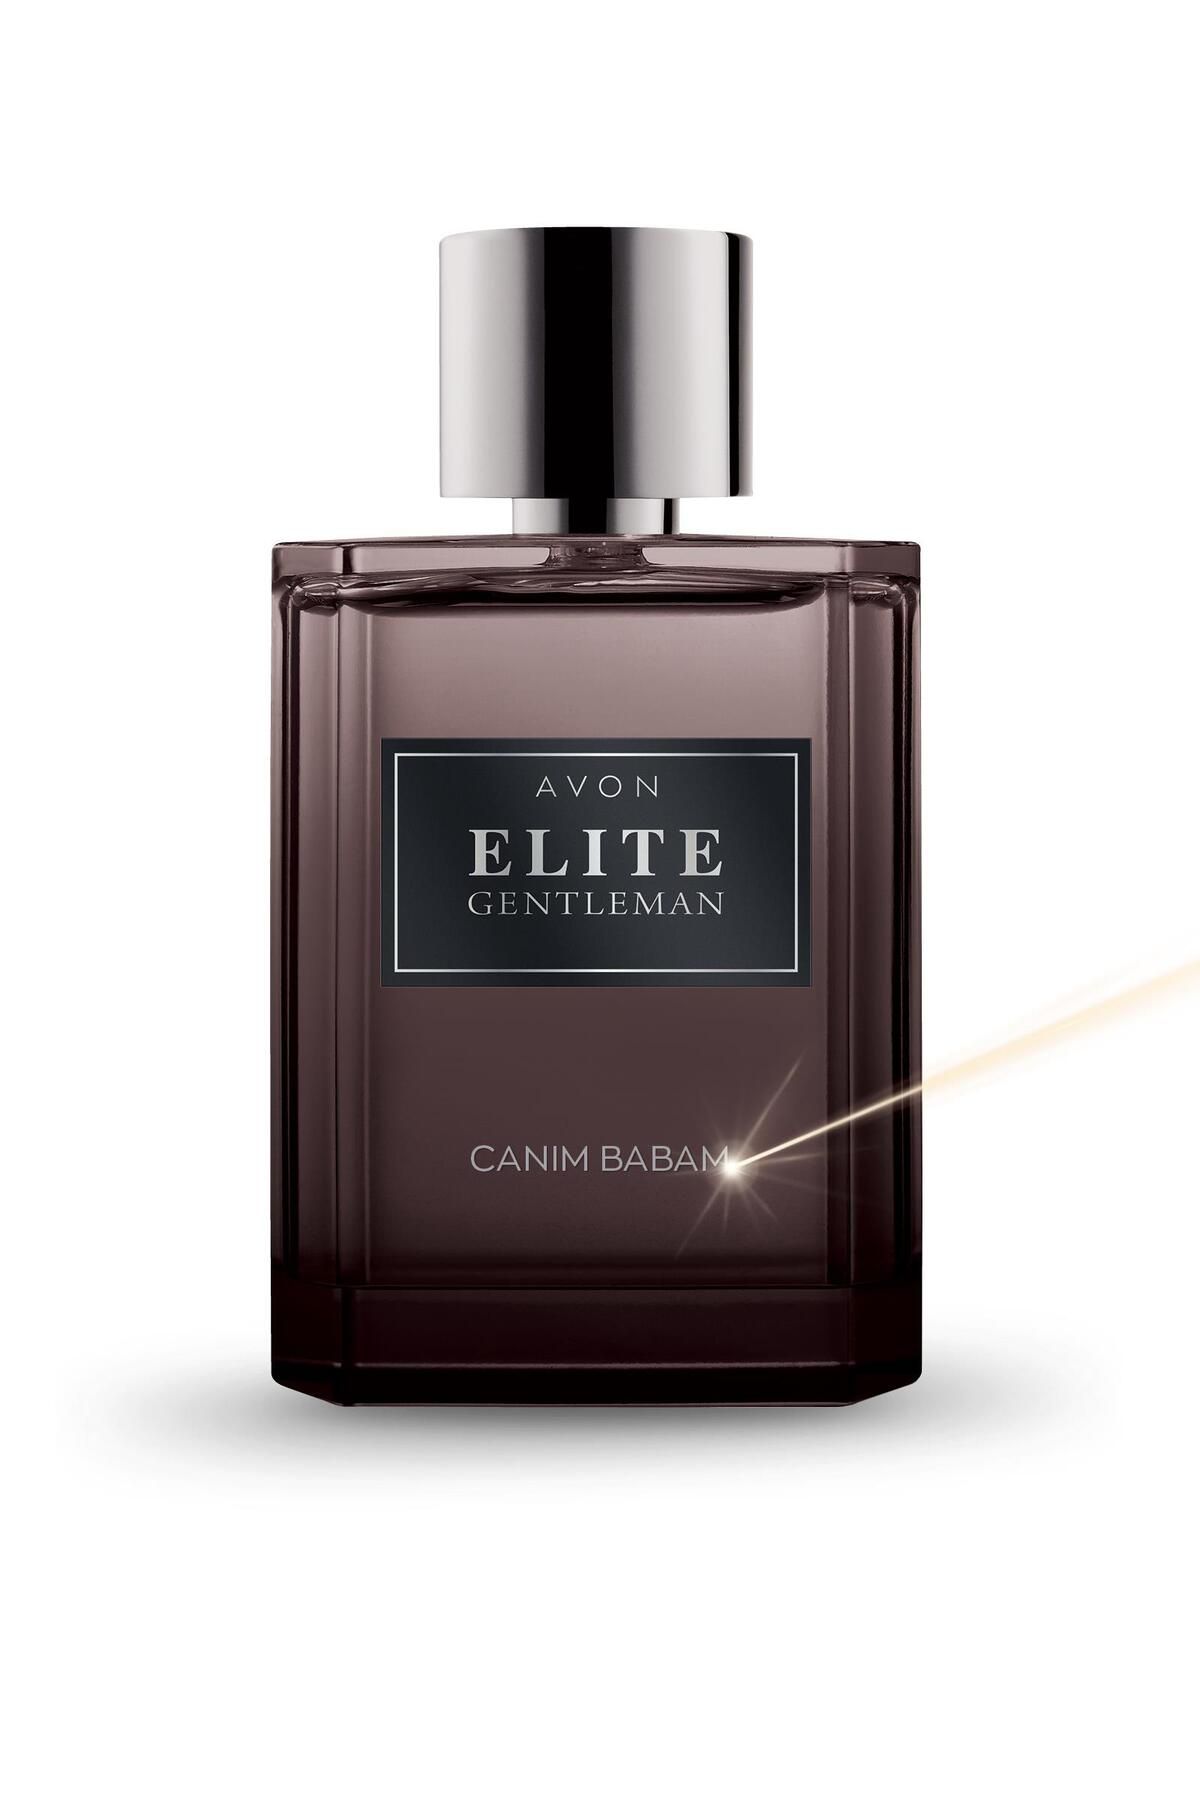 Avon Elite Gentleman Canım Babam Yazılı Erkek Parfüm Edt 75 Ml.